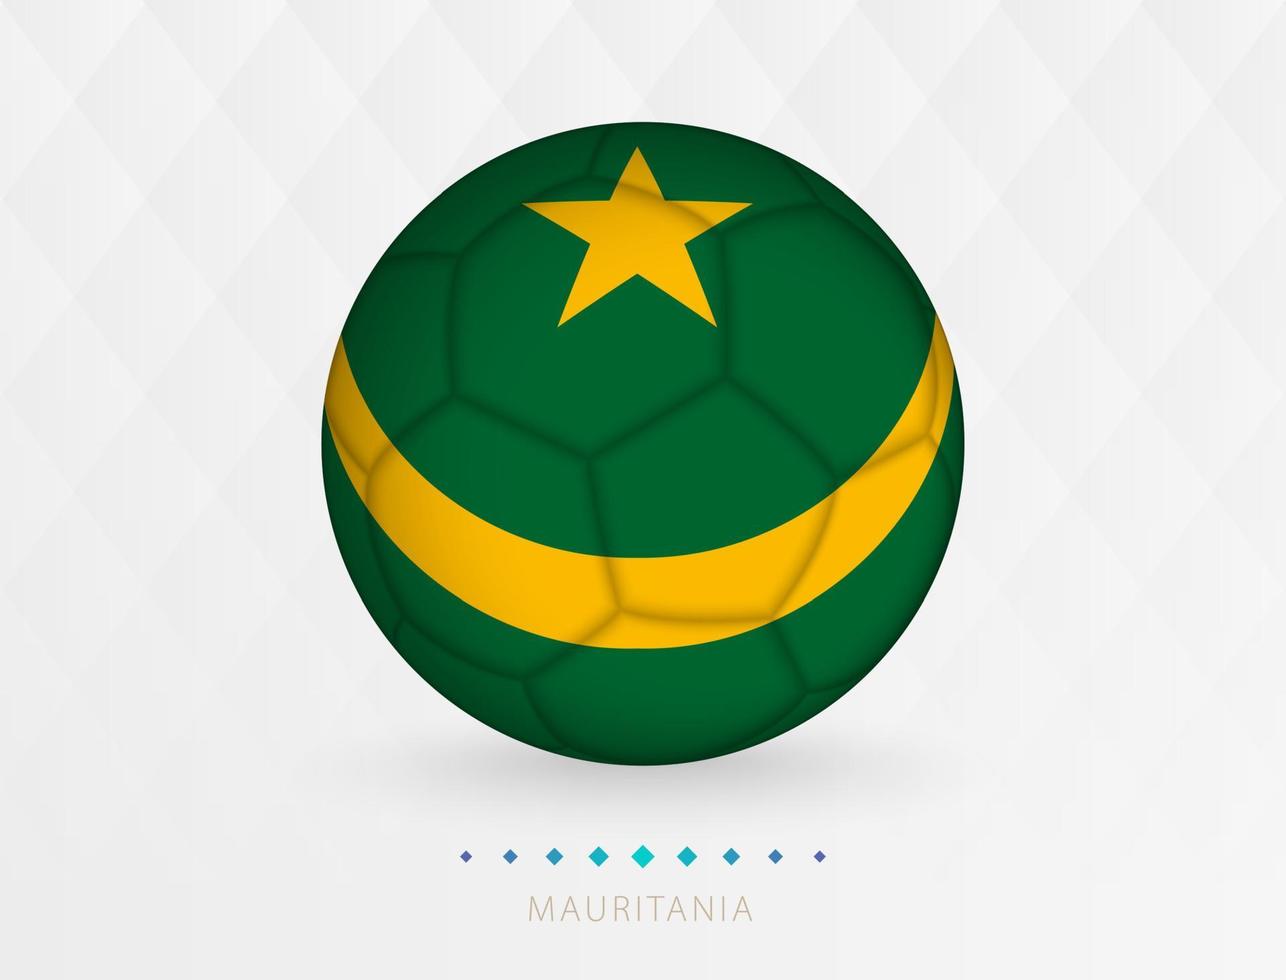 Amerikaans voetbal bal met mauritania vlag patroon, voetbal bal met vlag van mauritania nationaal team. vector